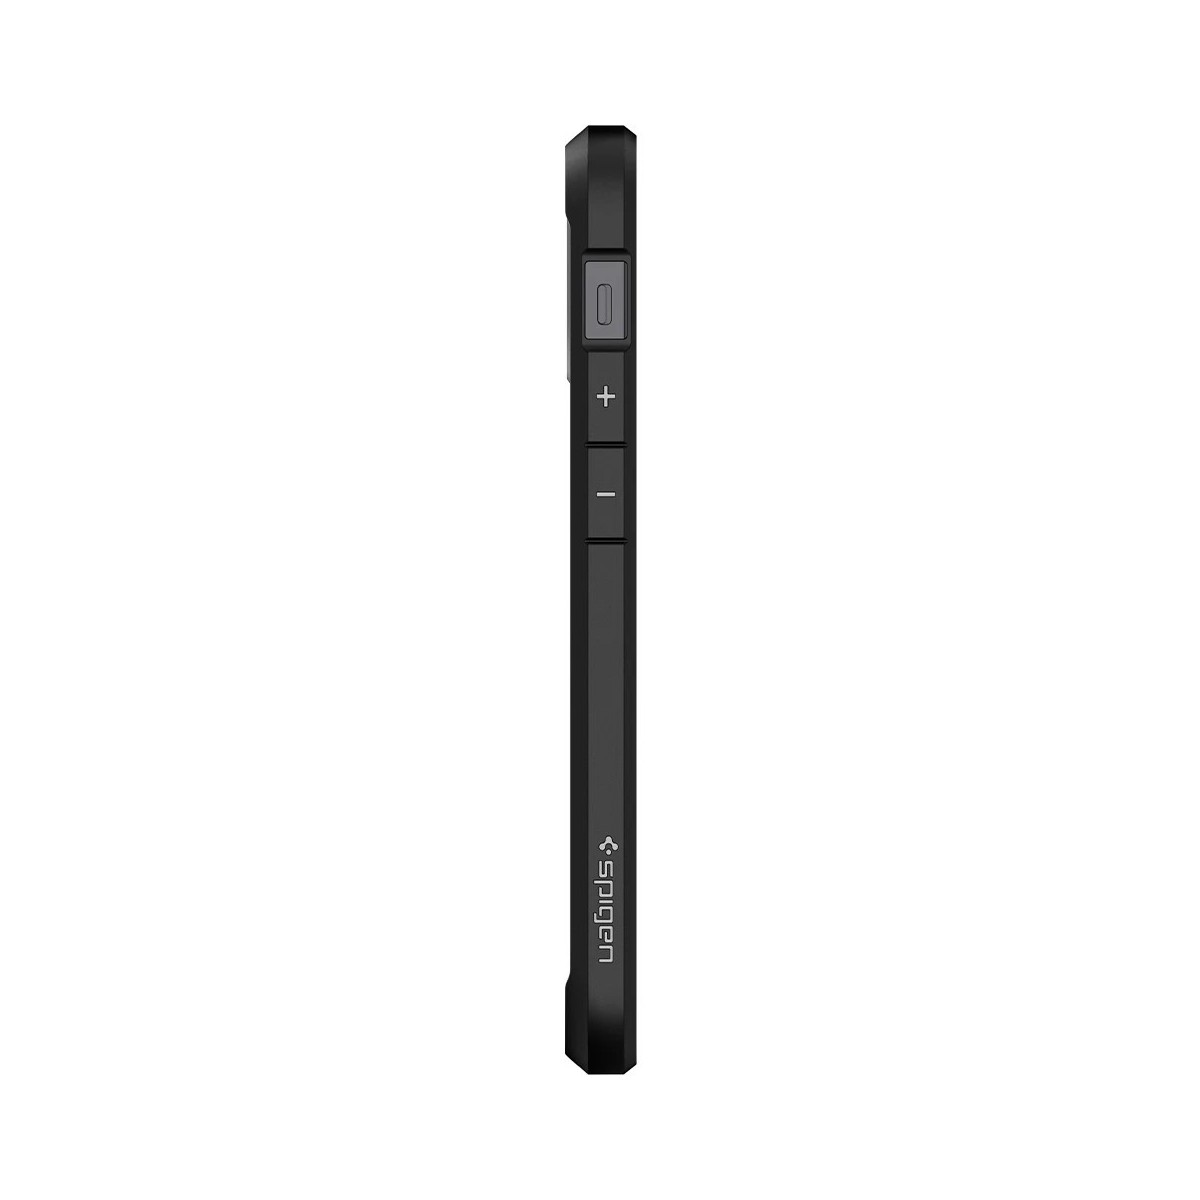 Spigen Coque iPhone 12 Mini (5,4) Ultra Hybrid noir mat